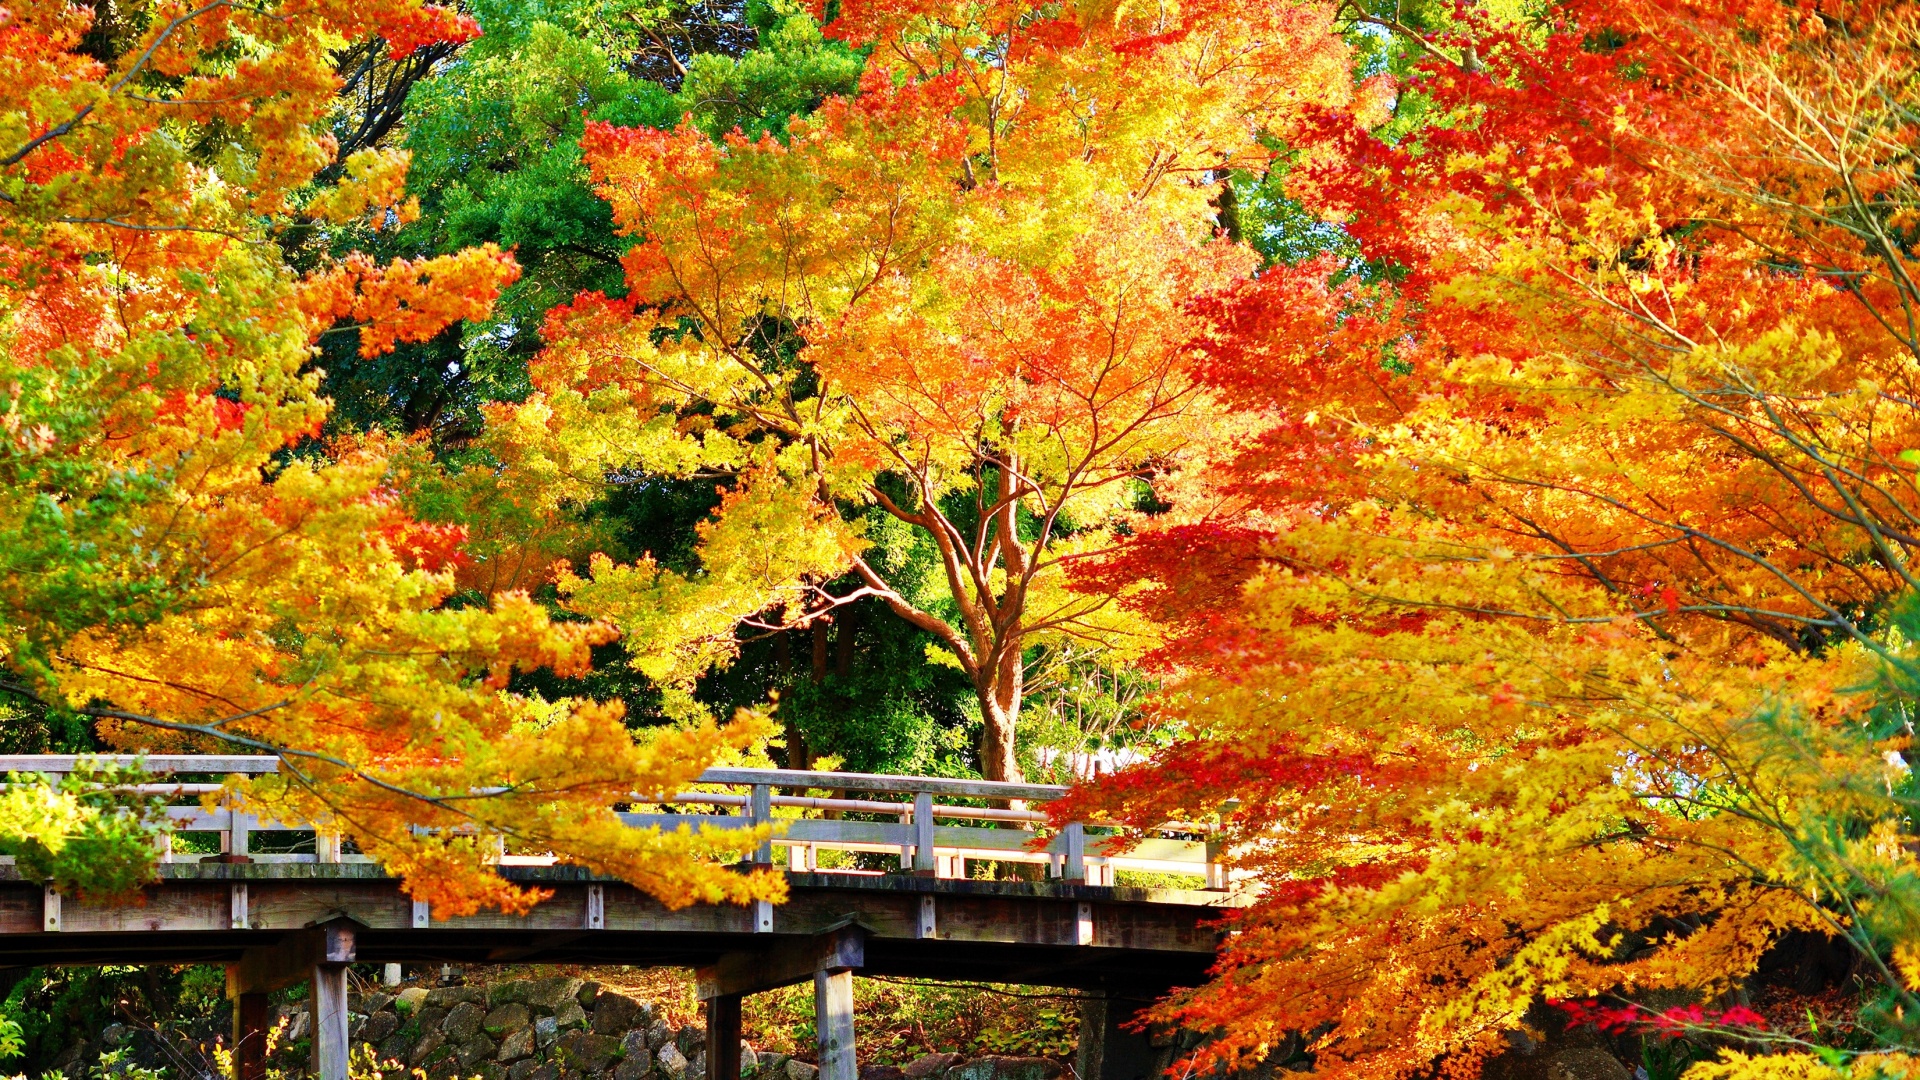 金色的秋天 树木 桥梁 公园 阳光明媚风景桌面壁纸